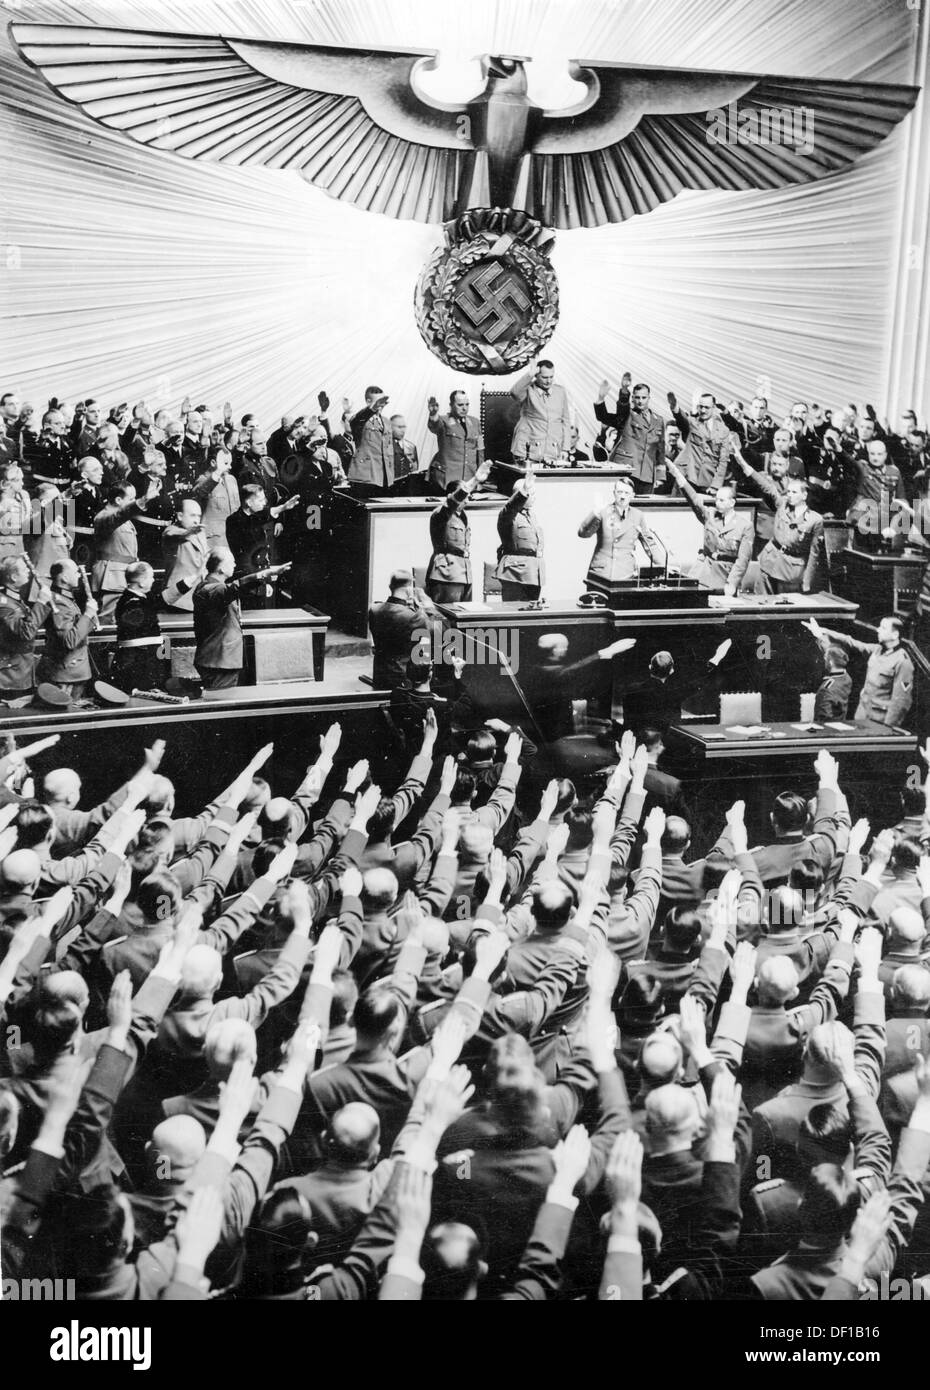 L'image de la propagande nazie! Spectacles le chancelier Adolf Hitler salue les députés du Reichstag dans l'Opéra de Kroll à Berlin, Allemagne, le 11 décembre 1941. Dans le discours suivant, Hitler a déclaré la guerre aux États-Unis. Fotoarchiv für Zeitgeschichte Banque D'Images